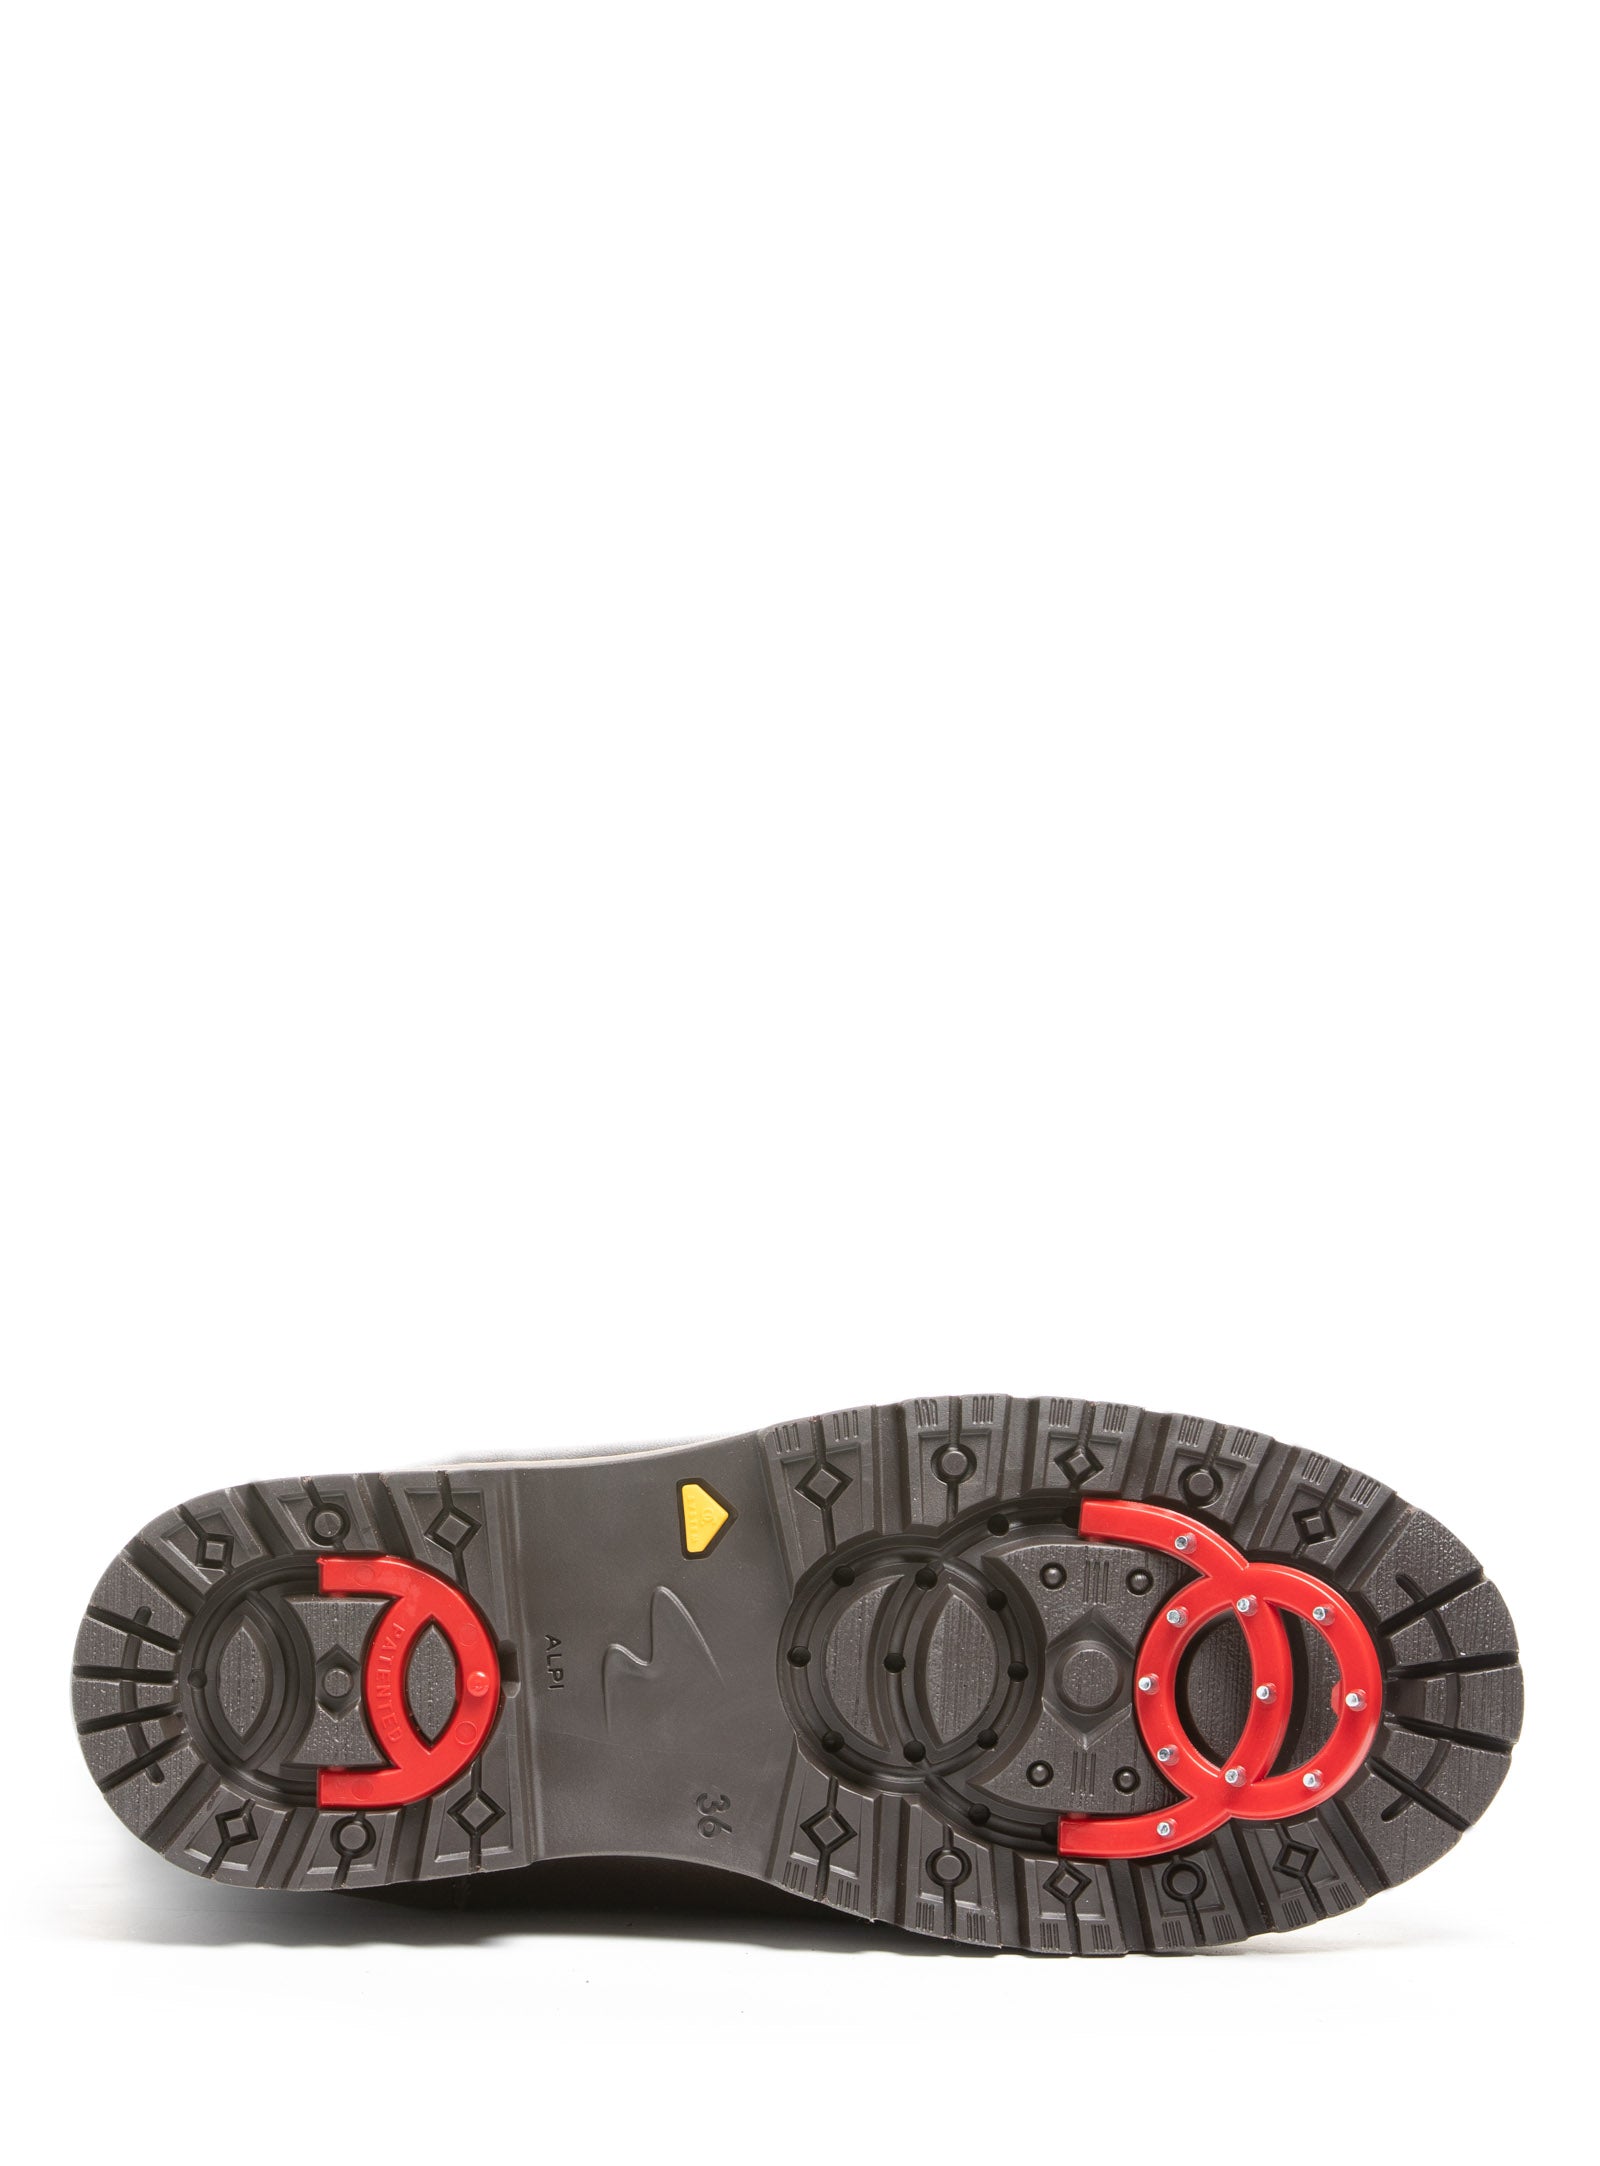 OCsystem, l'invention de chaussures avec crampons intégrés et amovibles  pour affronter l'hiver - NeozOne